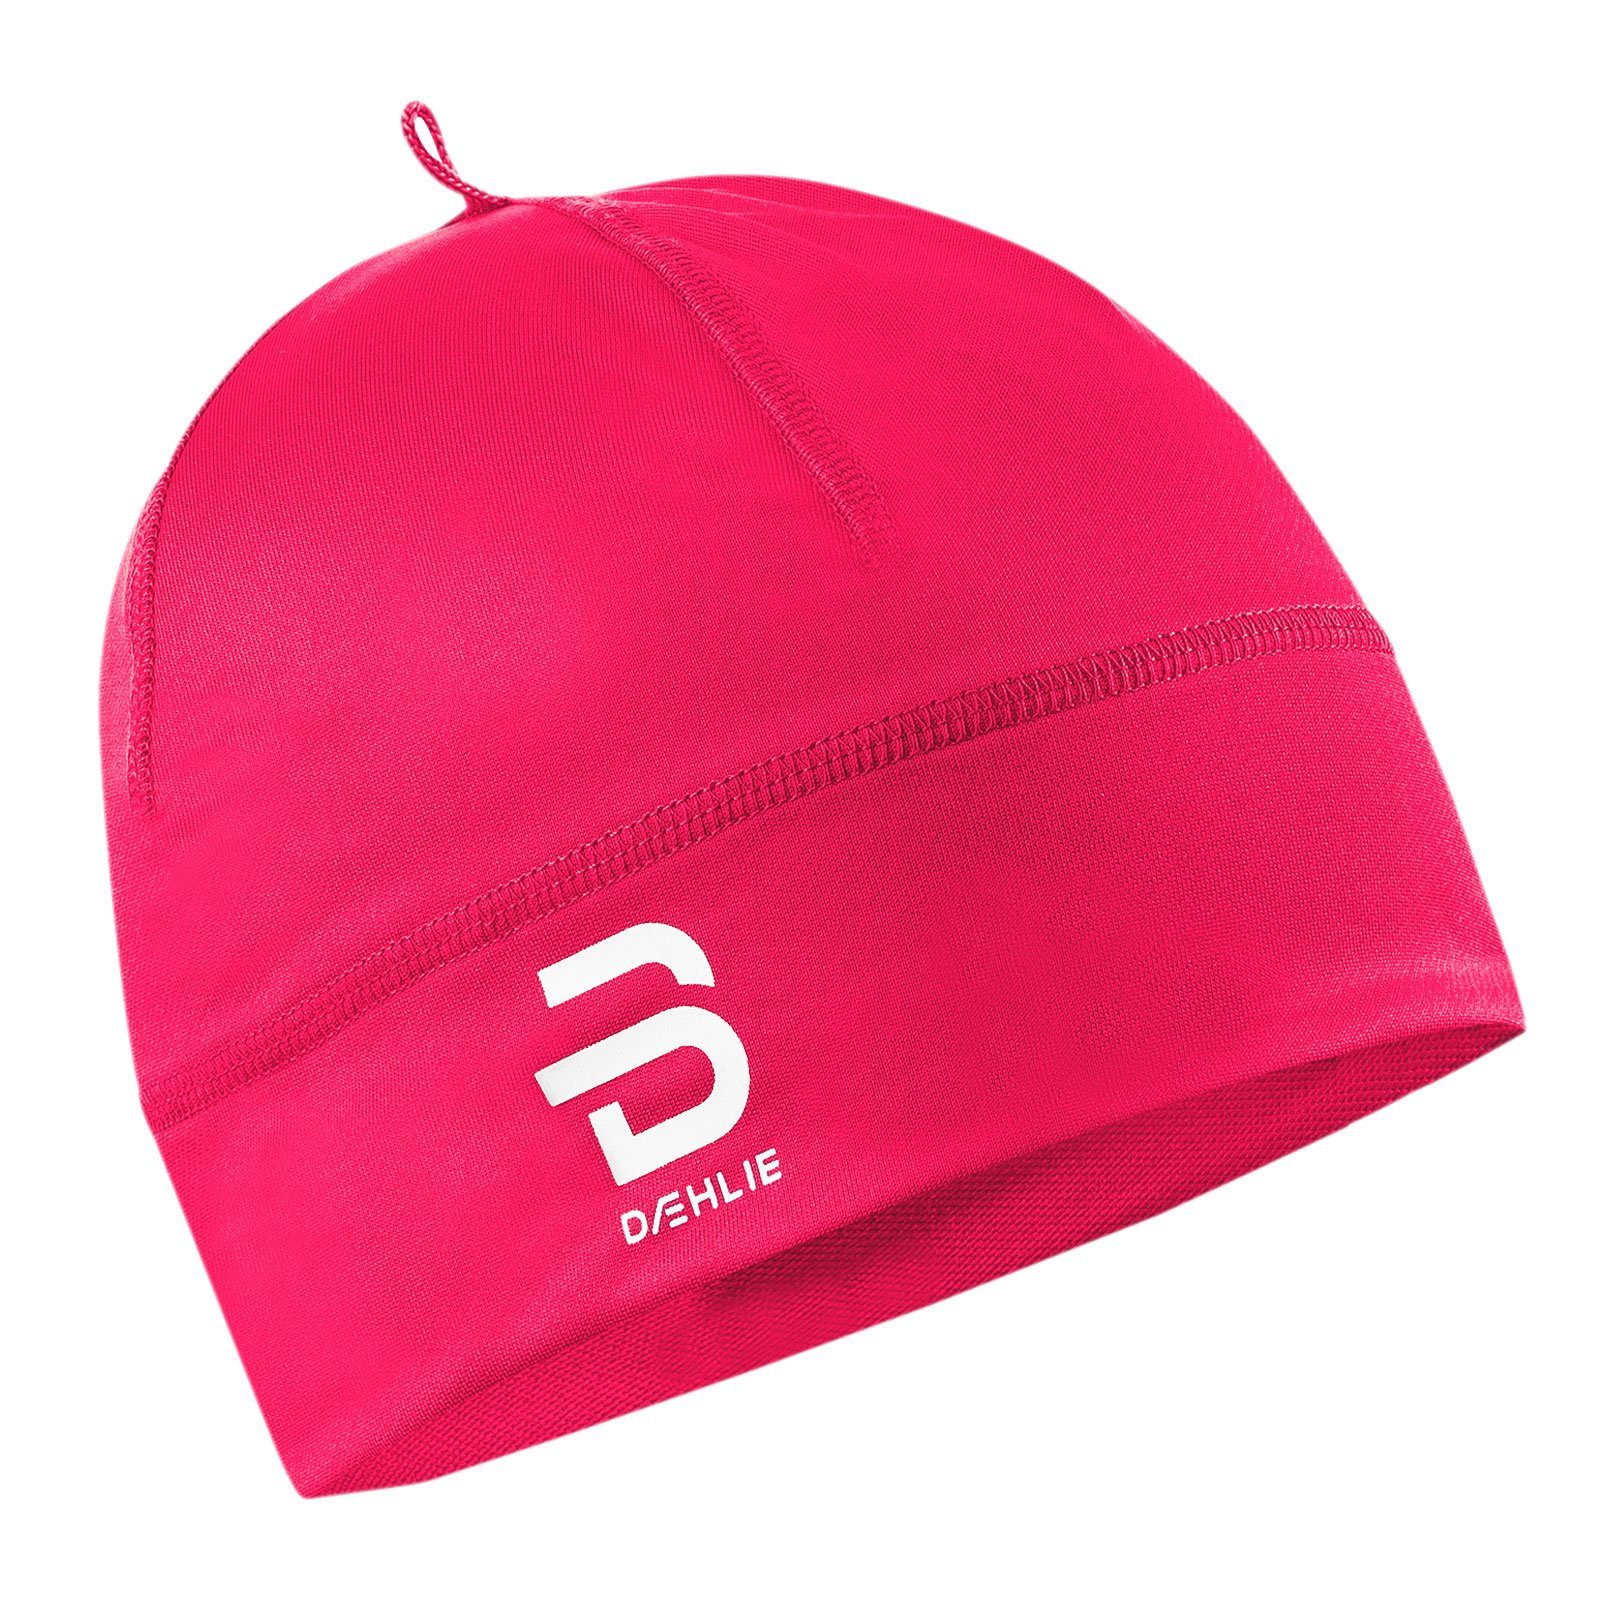 [Beliebtes neues Produkt!] DAEHLIE Skimütze Hat Polyknit rosa dekorativem mit Logo